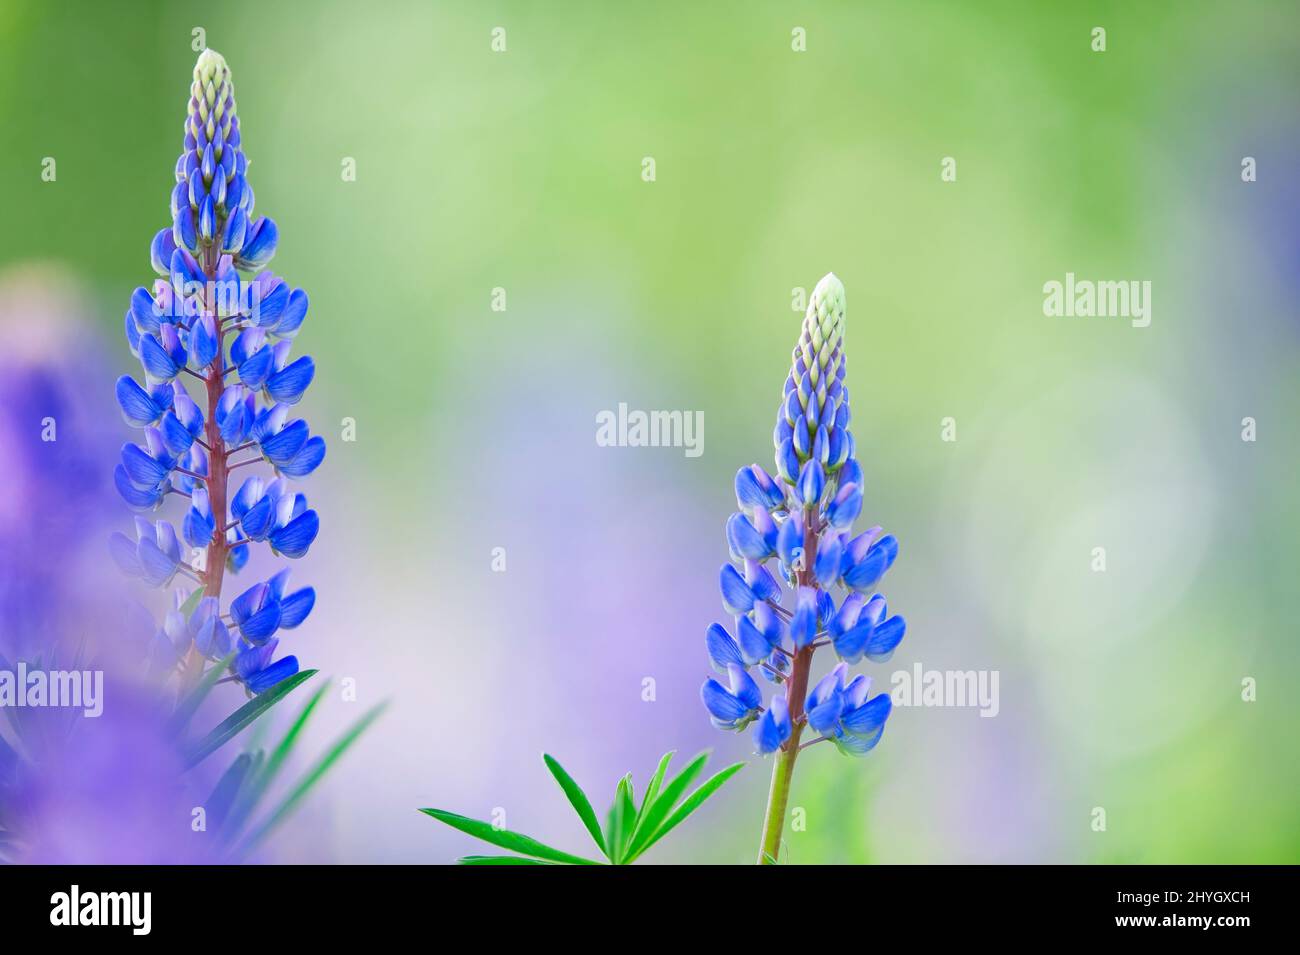 Lupin bleu (Lupinus polyphyllus) dans le champ. Mise au point sélective, arrière-plan flou avec effet de flou flou. Banque D'Images